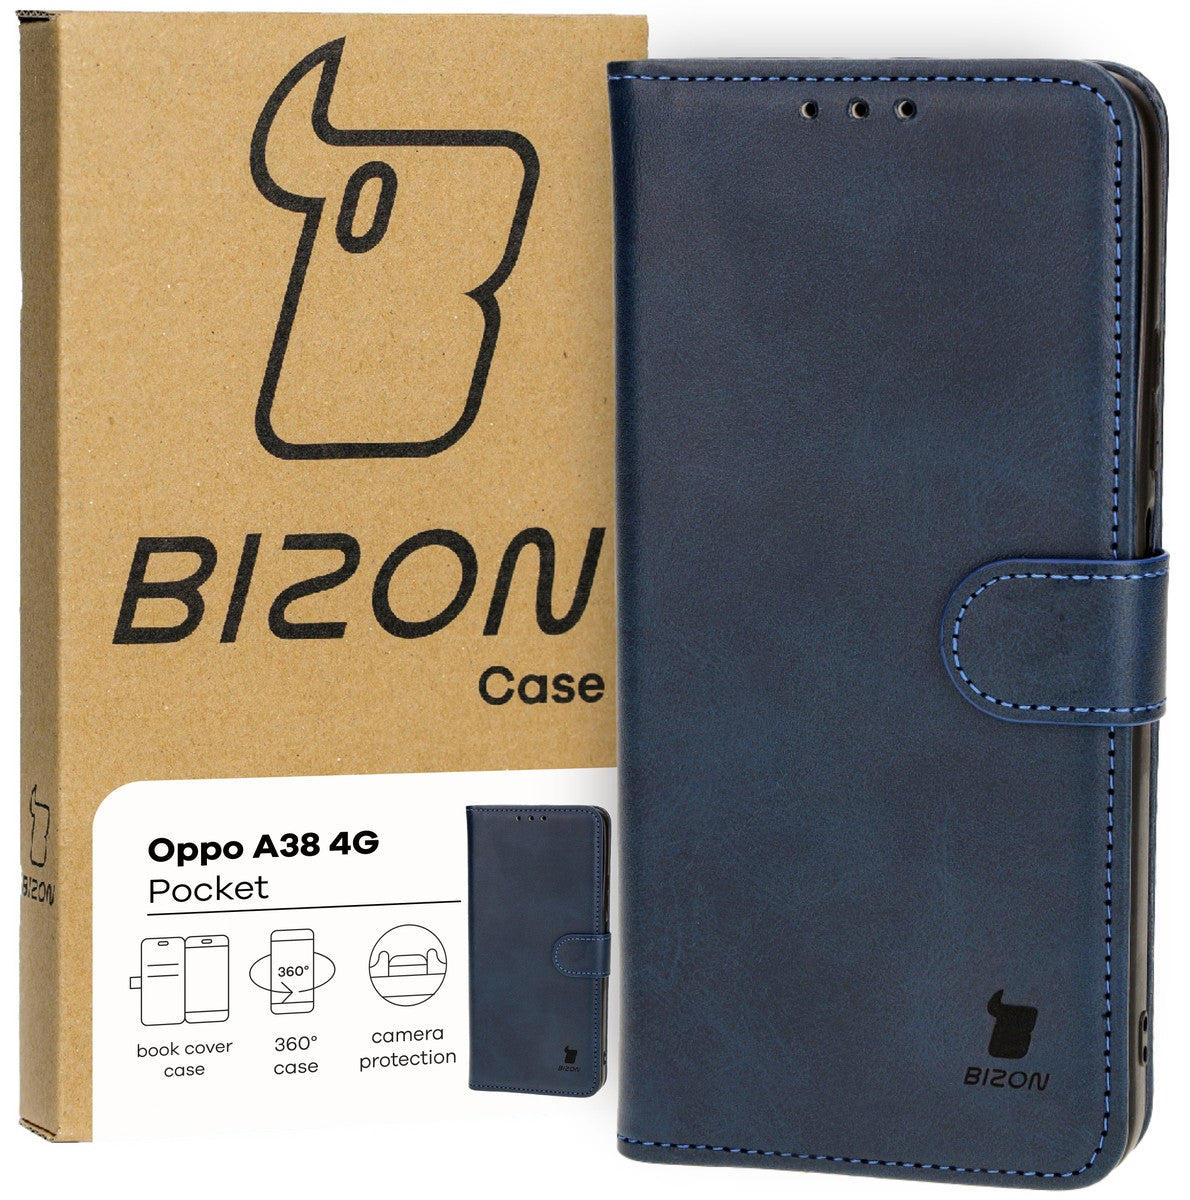 Schutzhülle für Oppo A38 4G, Bizon Case Pocket, Dunkelblau